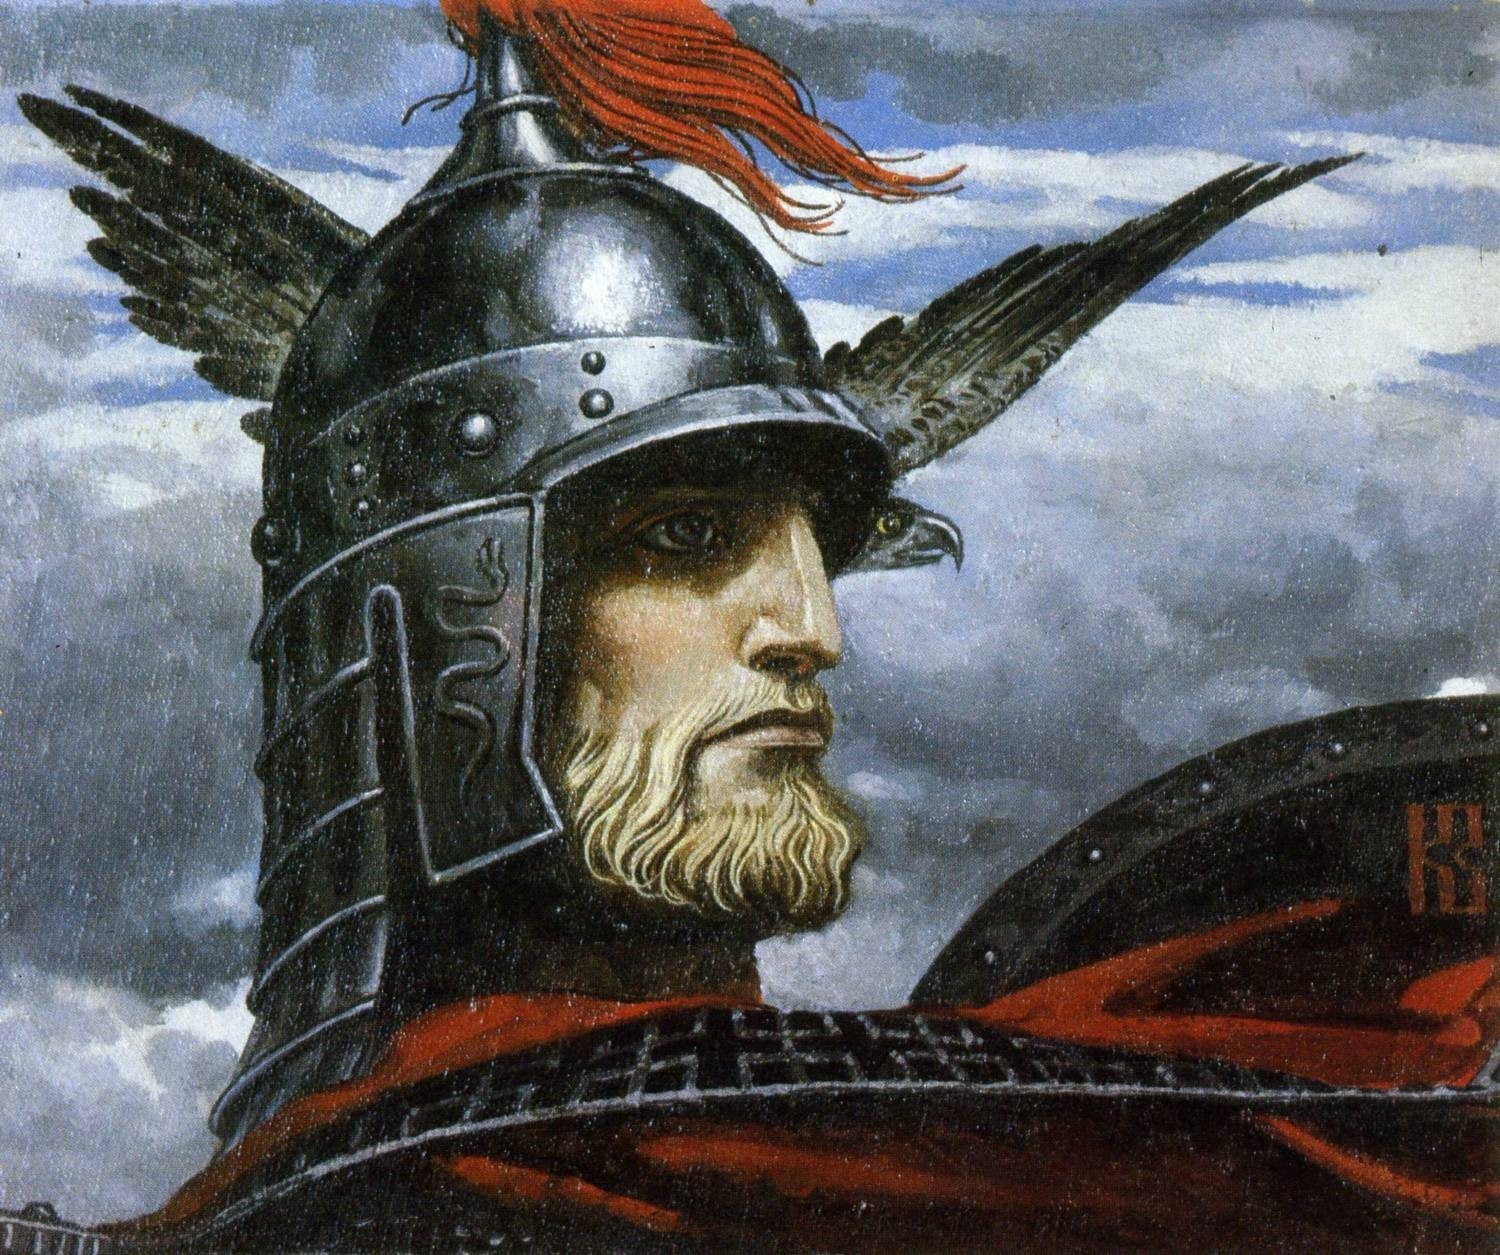 Painting helmet medieval mythology slavic art